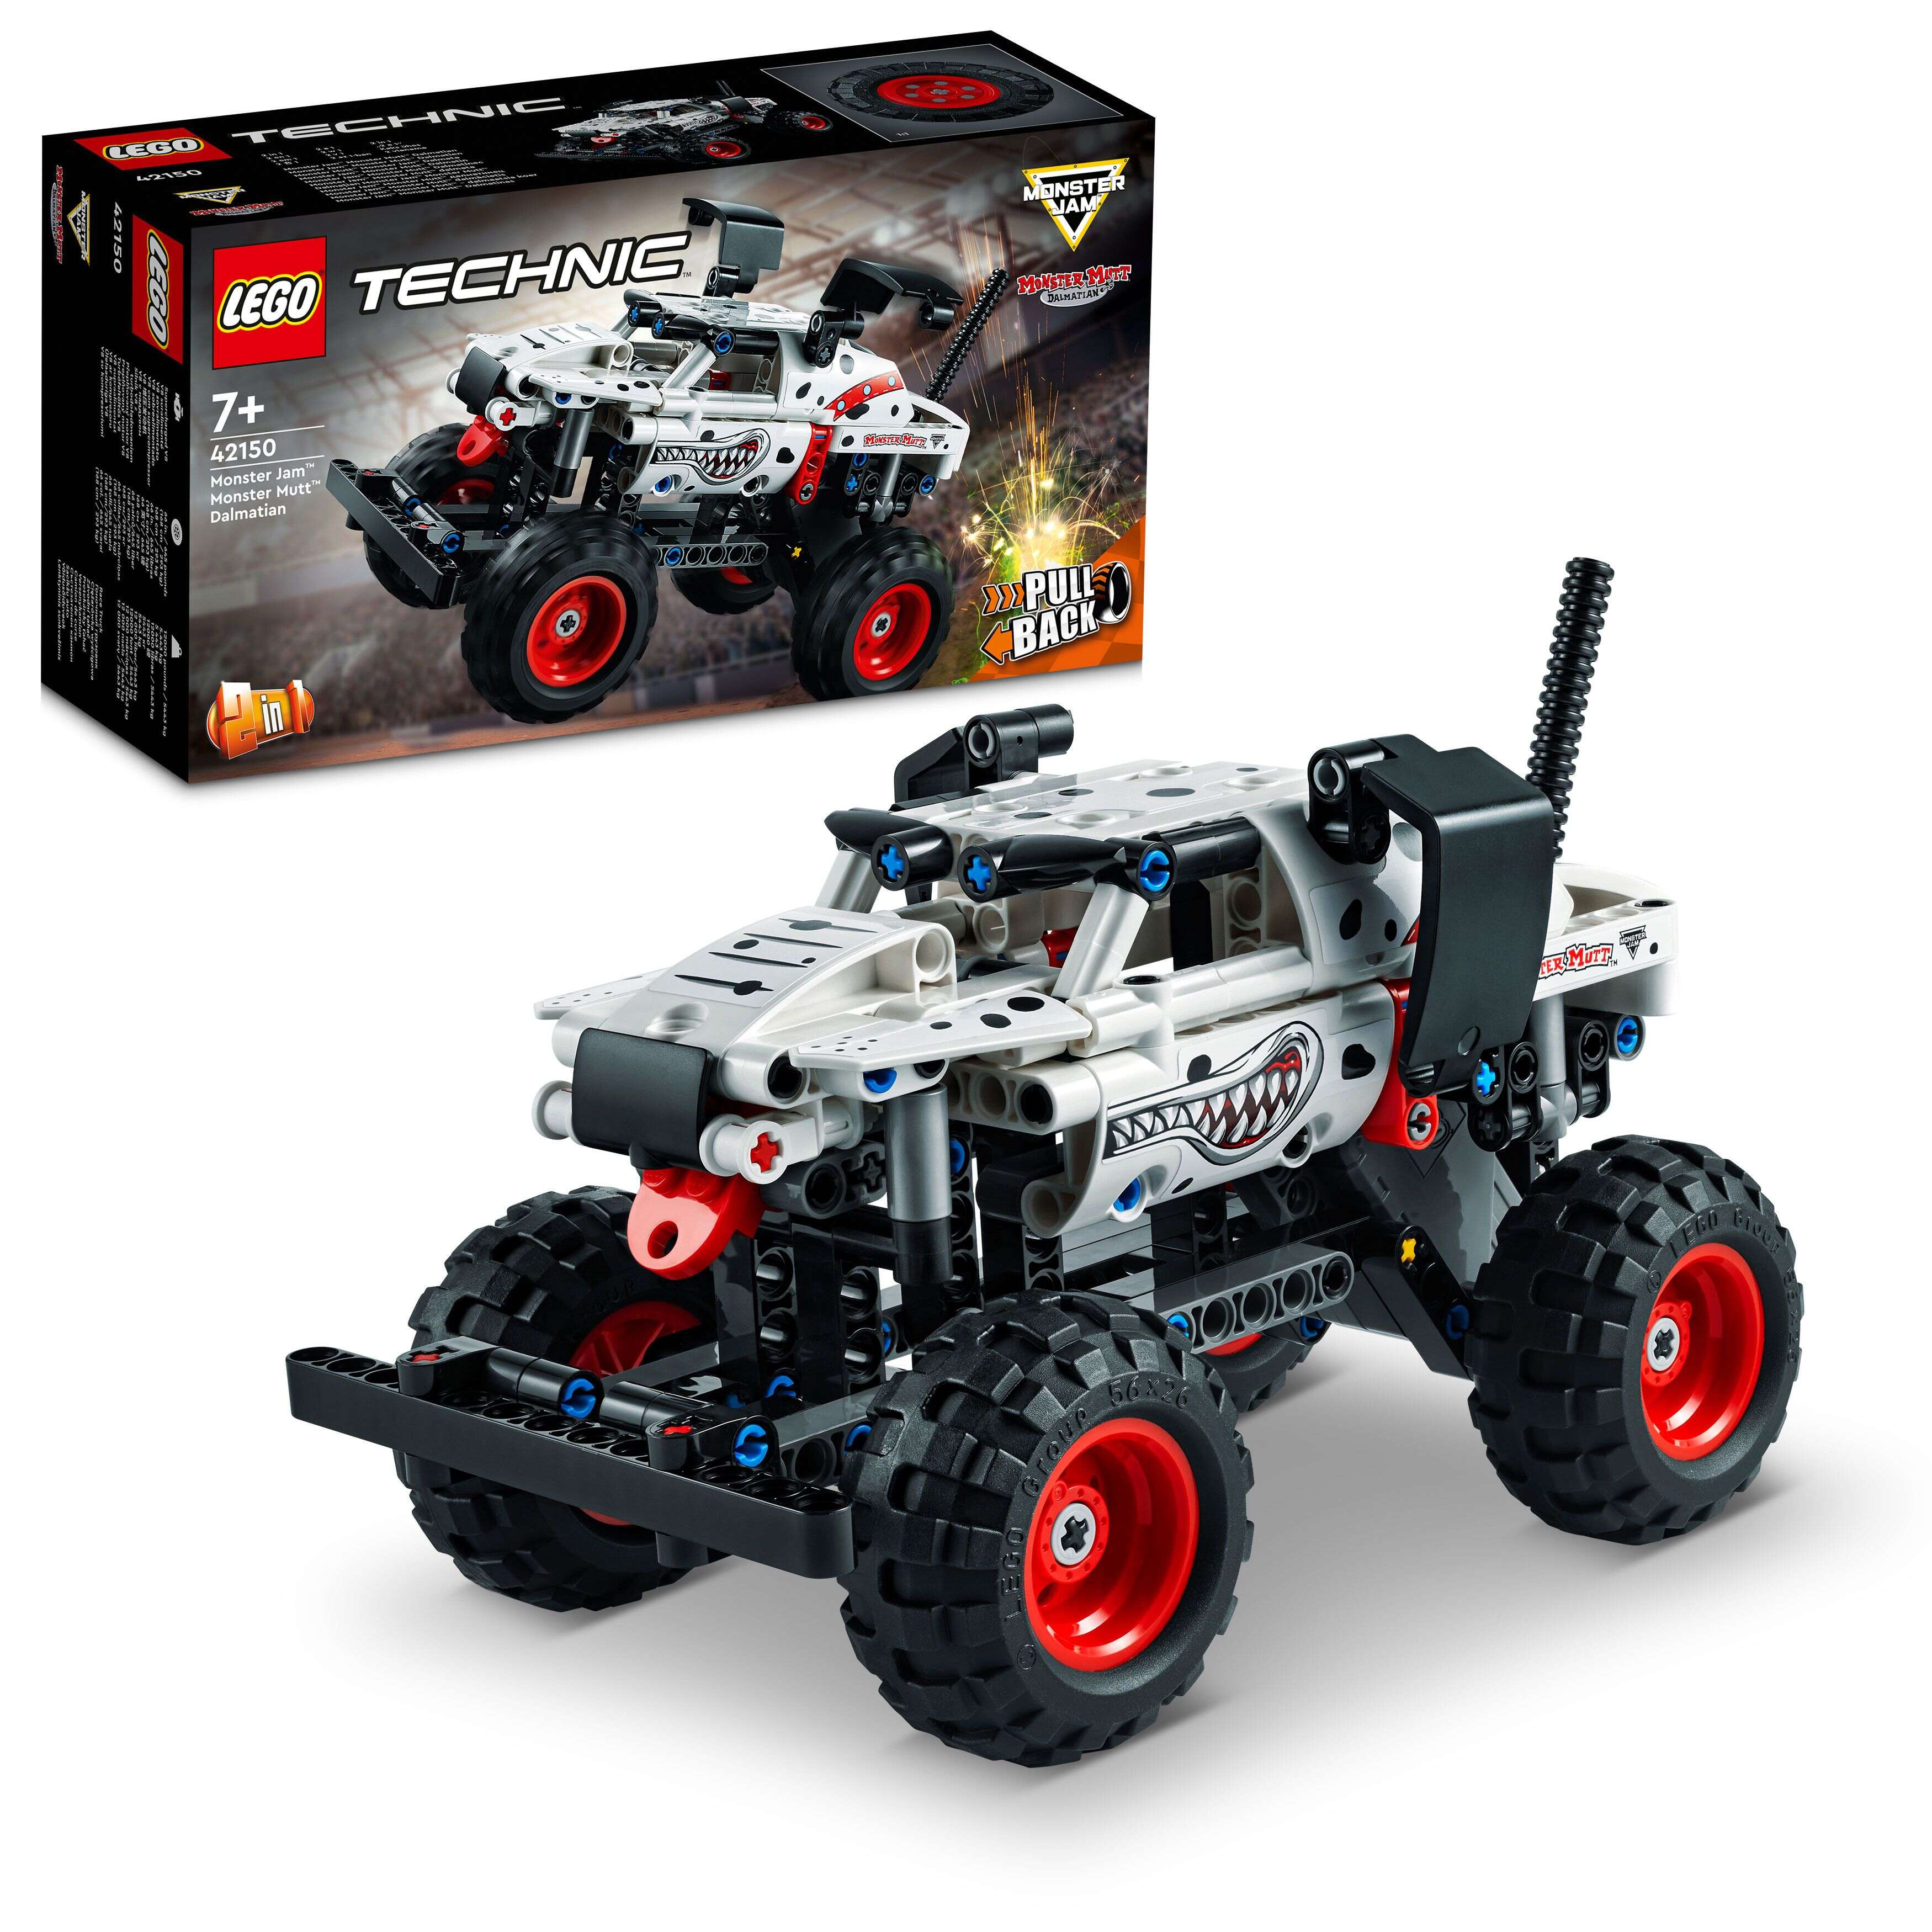 LEGO 42150 Technic Monster Jam™ Monster Mutt™ Dalmatian, 2-in-1-Spielzeug